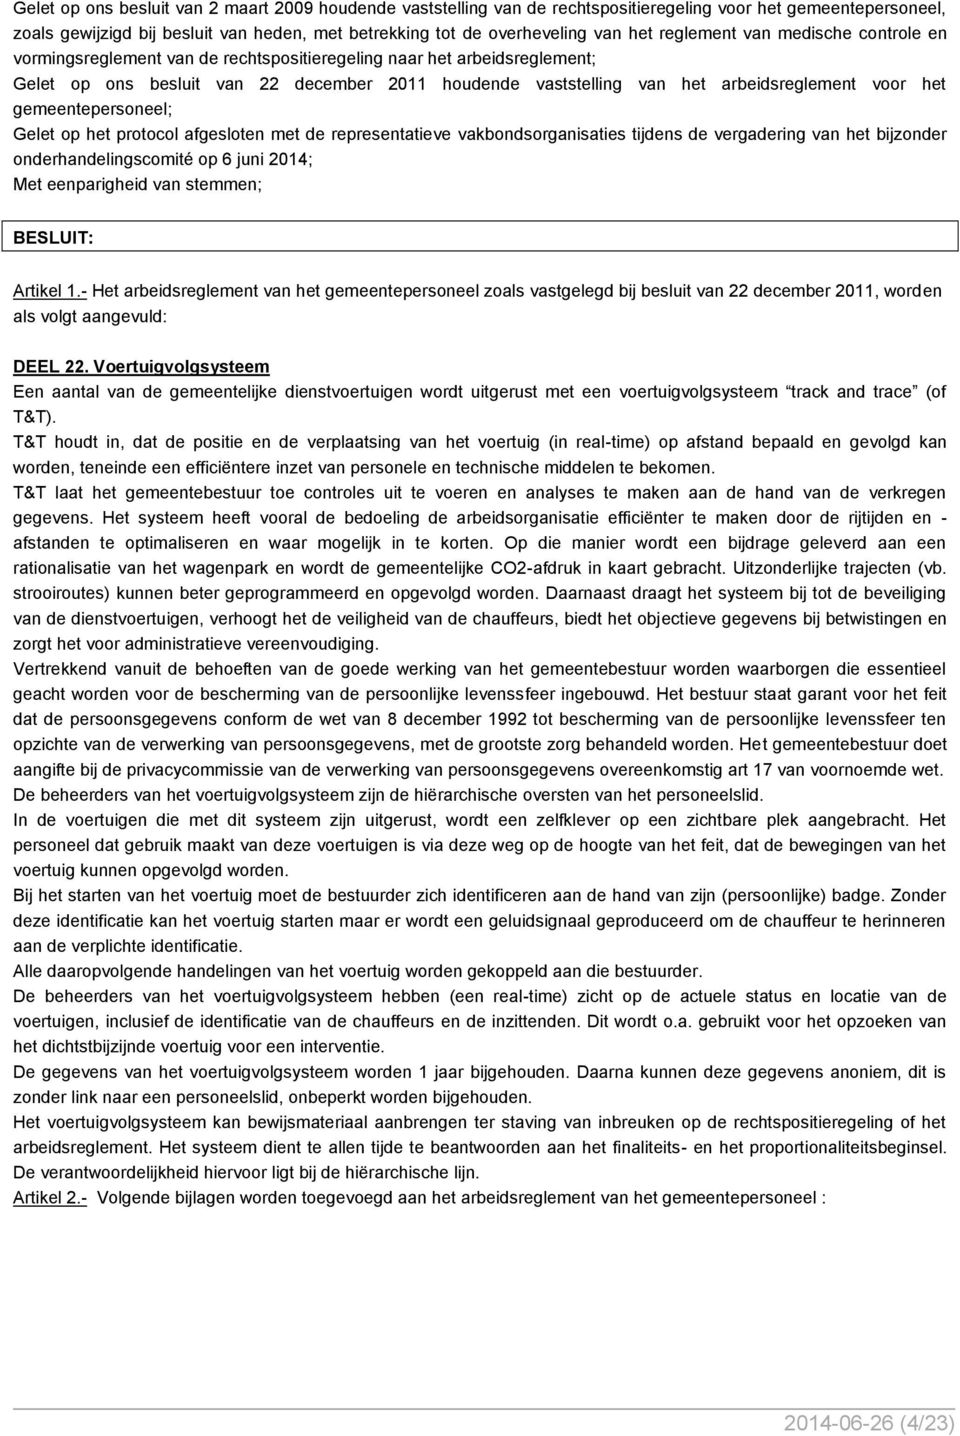 voor het gemeentepersoneel; Gelet op het protocol afgesloten met de representatieve vakbondsorganisaties tijdens de vergadering van het bijzonder onderhandelingscomité op 6 juni 2014; Artikel 1.